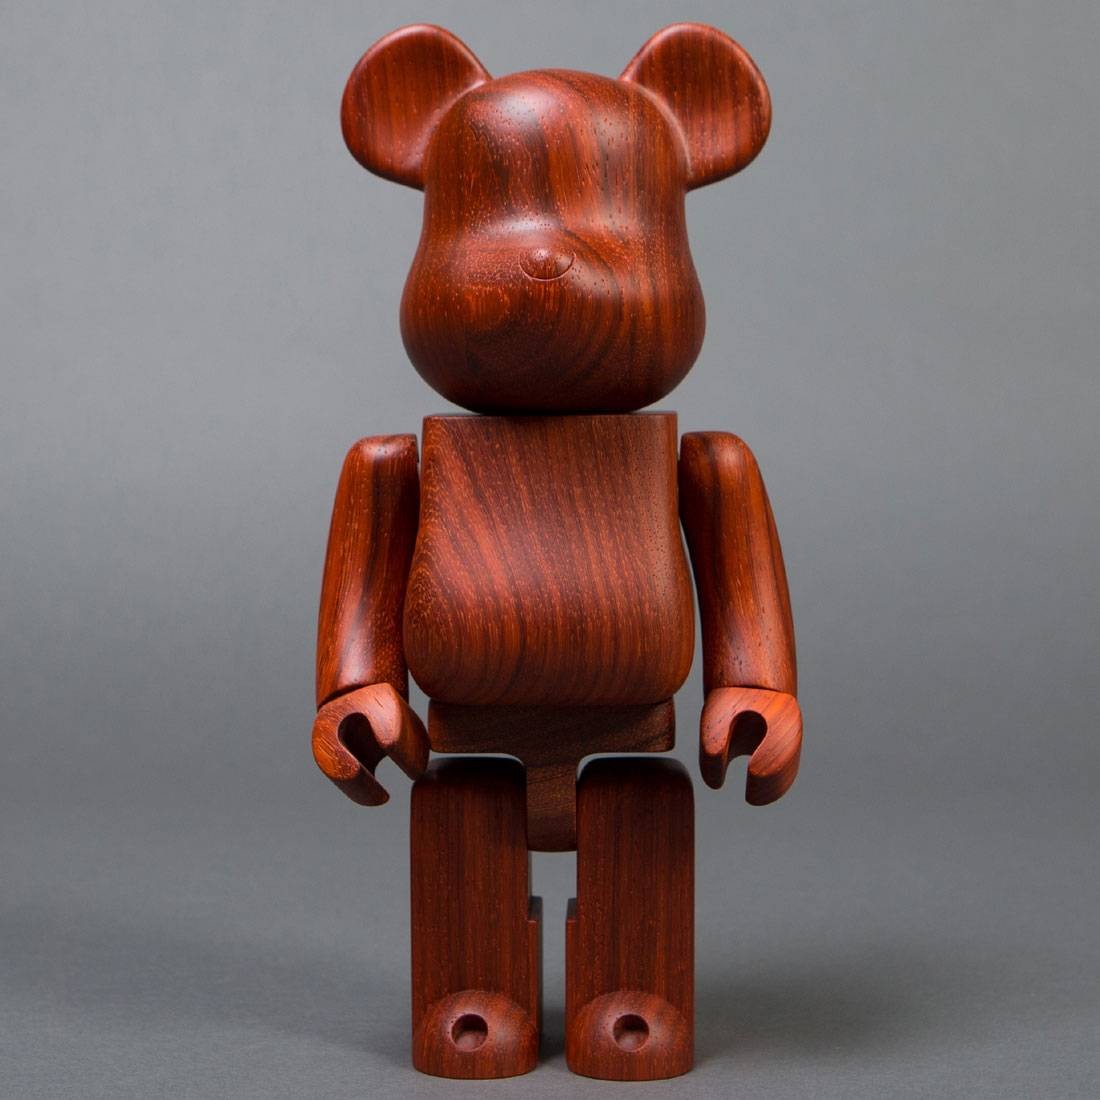 Medicom x Karimoku Padauk 400% Wooden Bearbrick Figure (brown)